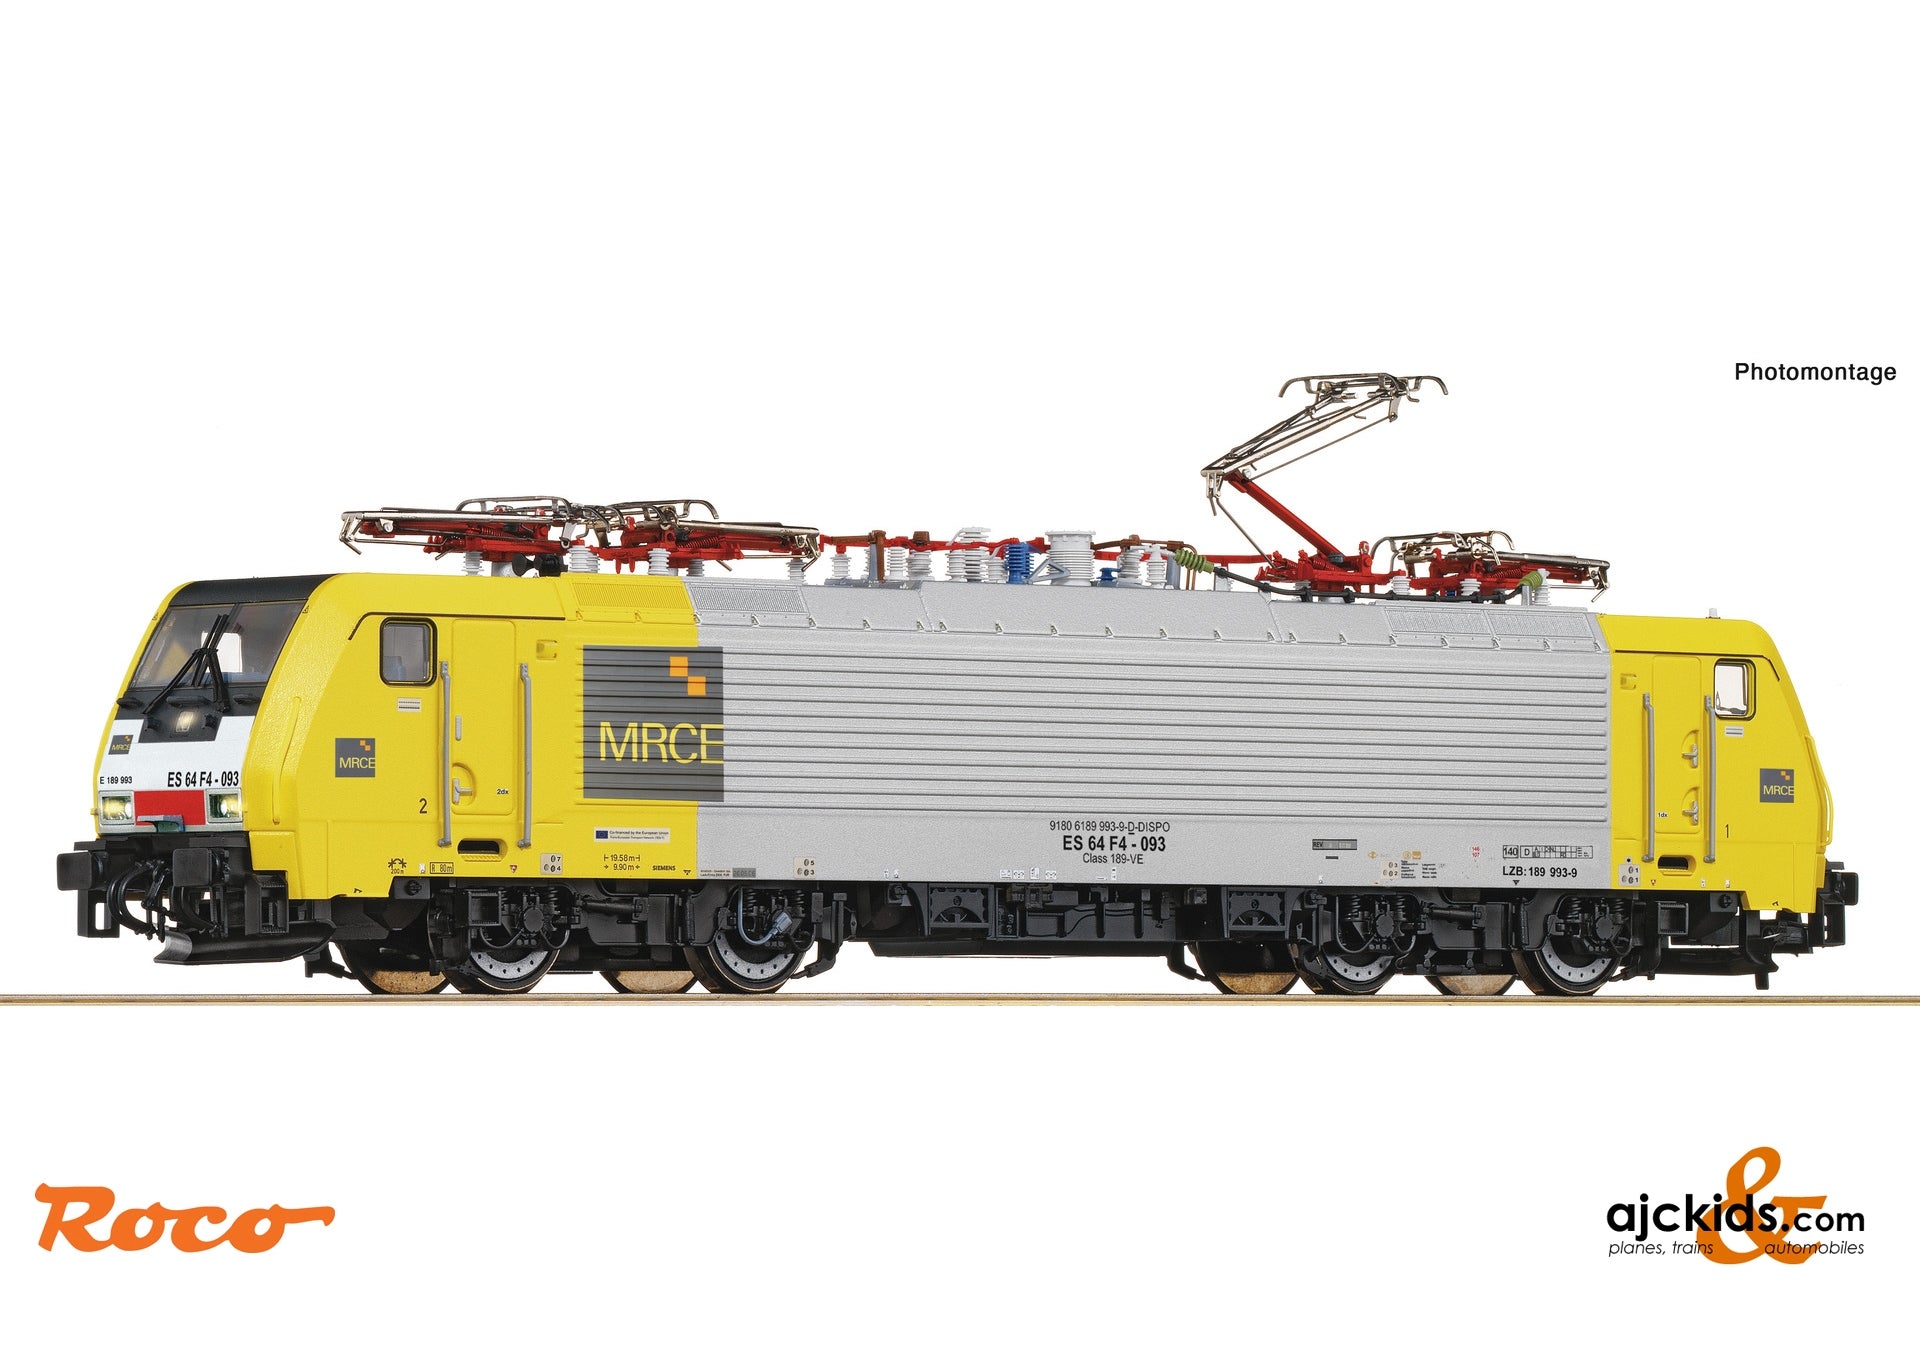 Roco 7500019 - Electric locomotive 189 993-9, MRCE/SBB CI at Ajckids.com